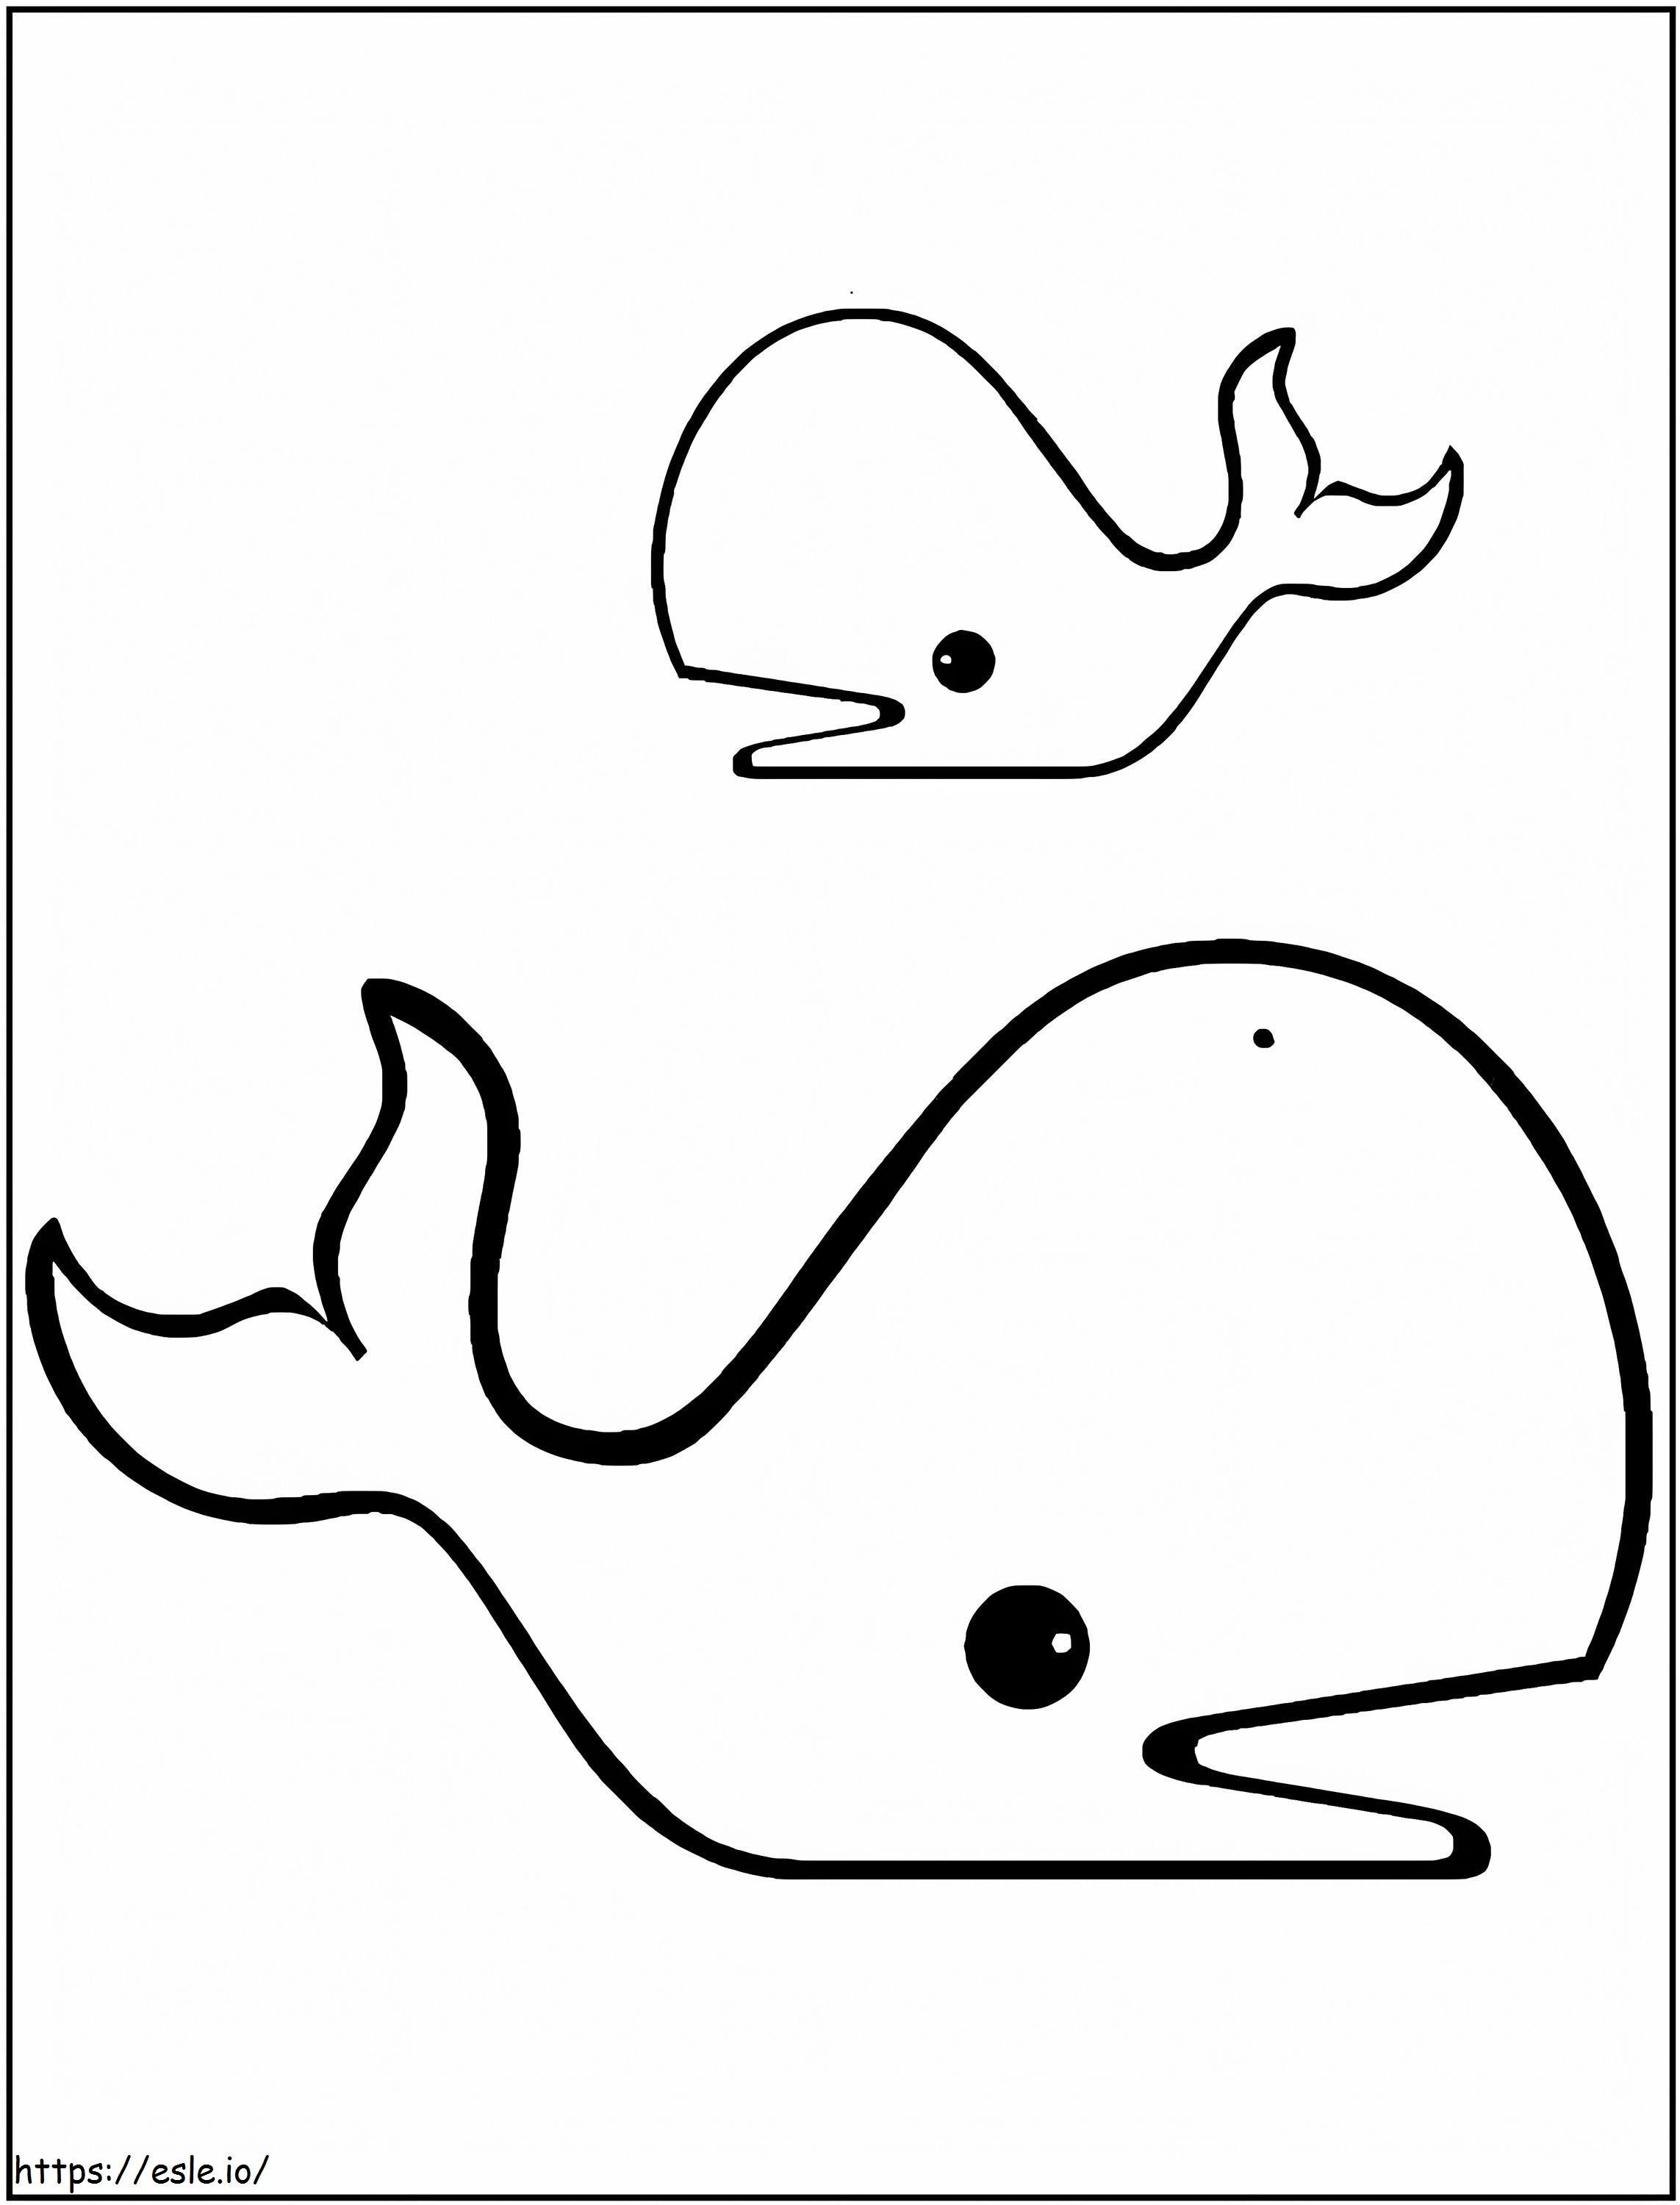 Zeichne zwei Wale ausmalbilder